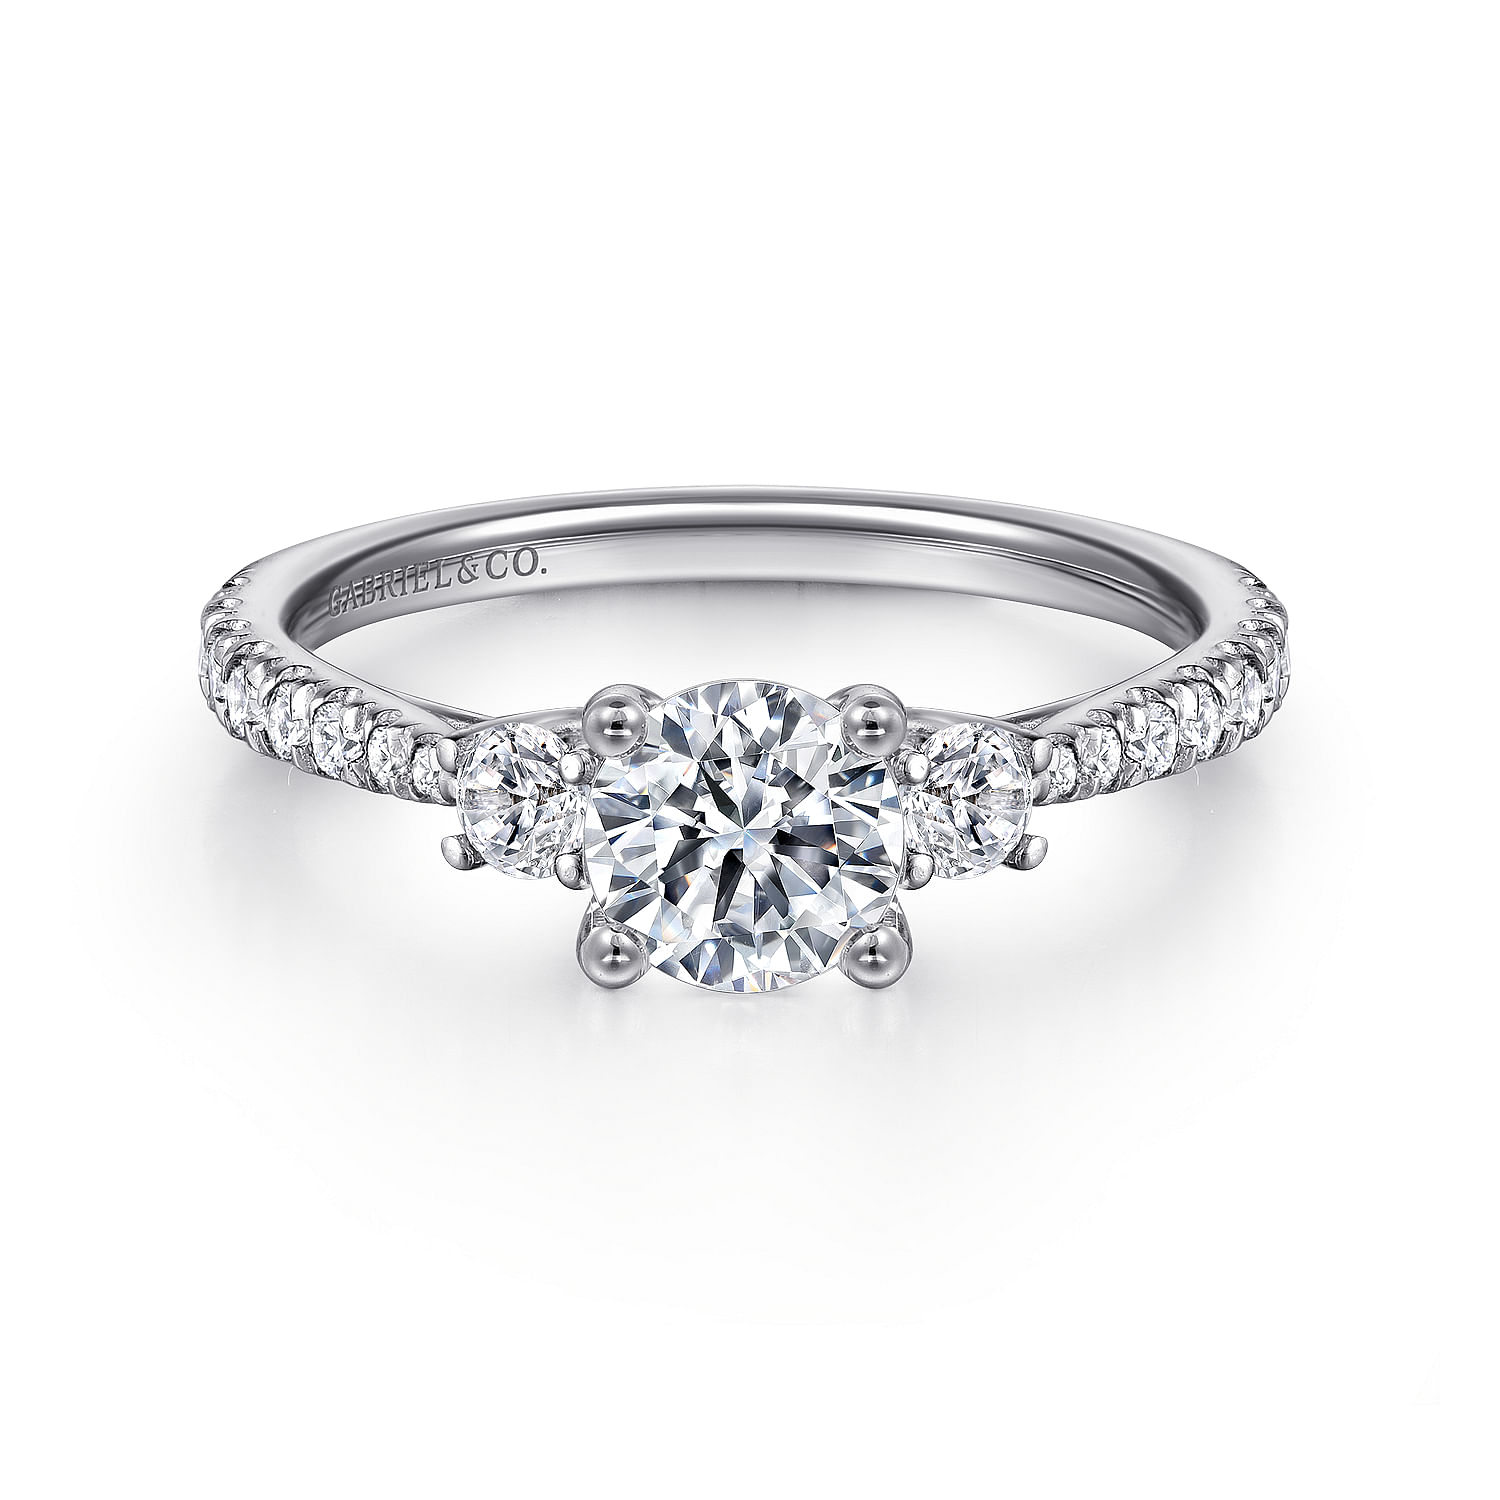 Sandy---14K-White-Gold-Round-Three-Stone-Diamond-Engagement-Ring1